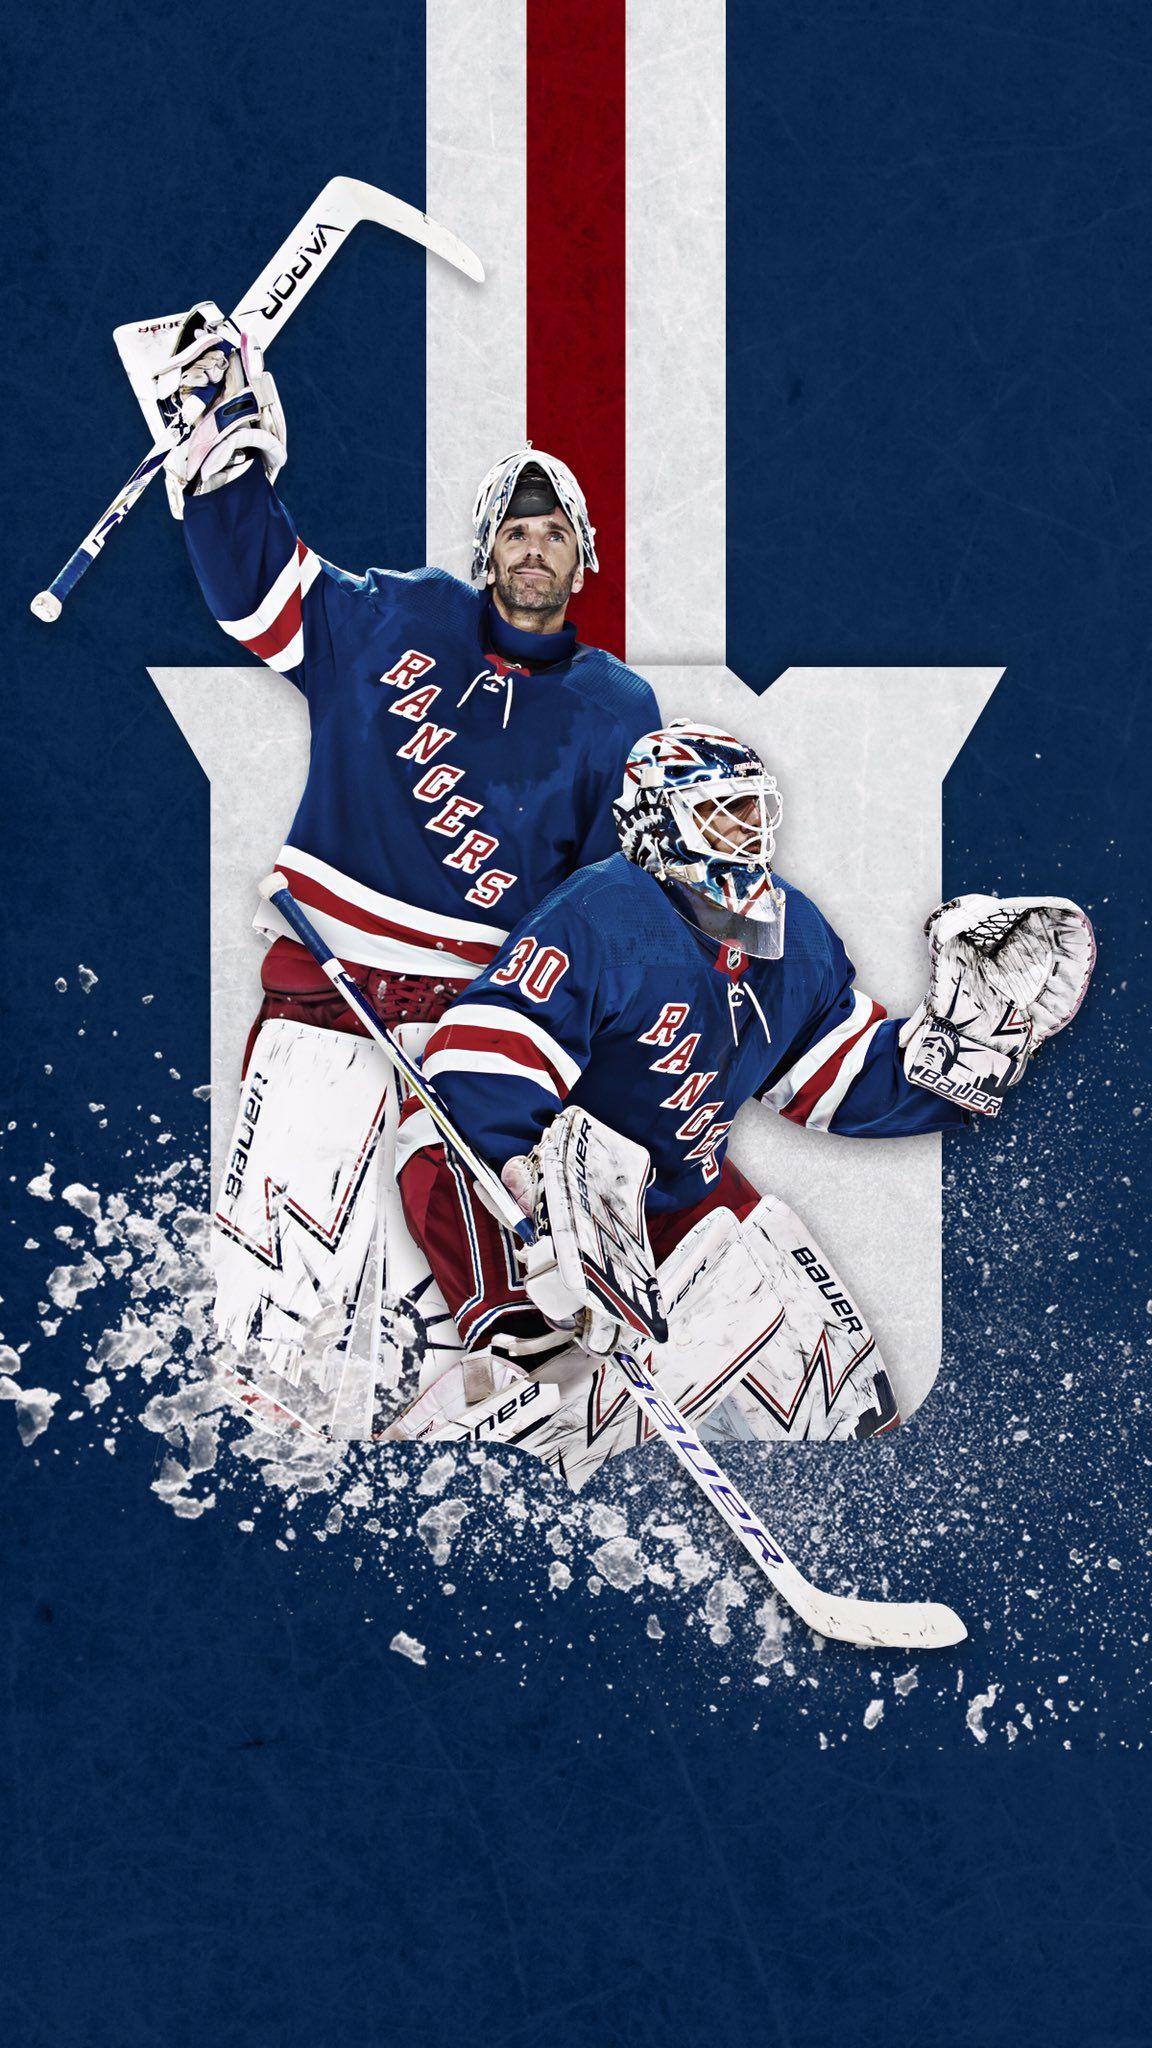 NY Rangers Wallpaper - iXpap  New york rangers, Ranger, Team wallpaper